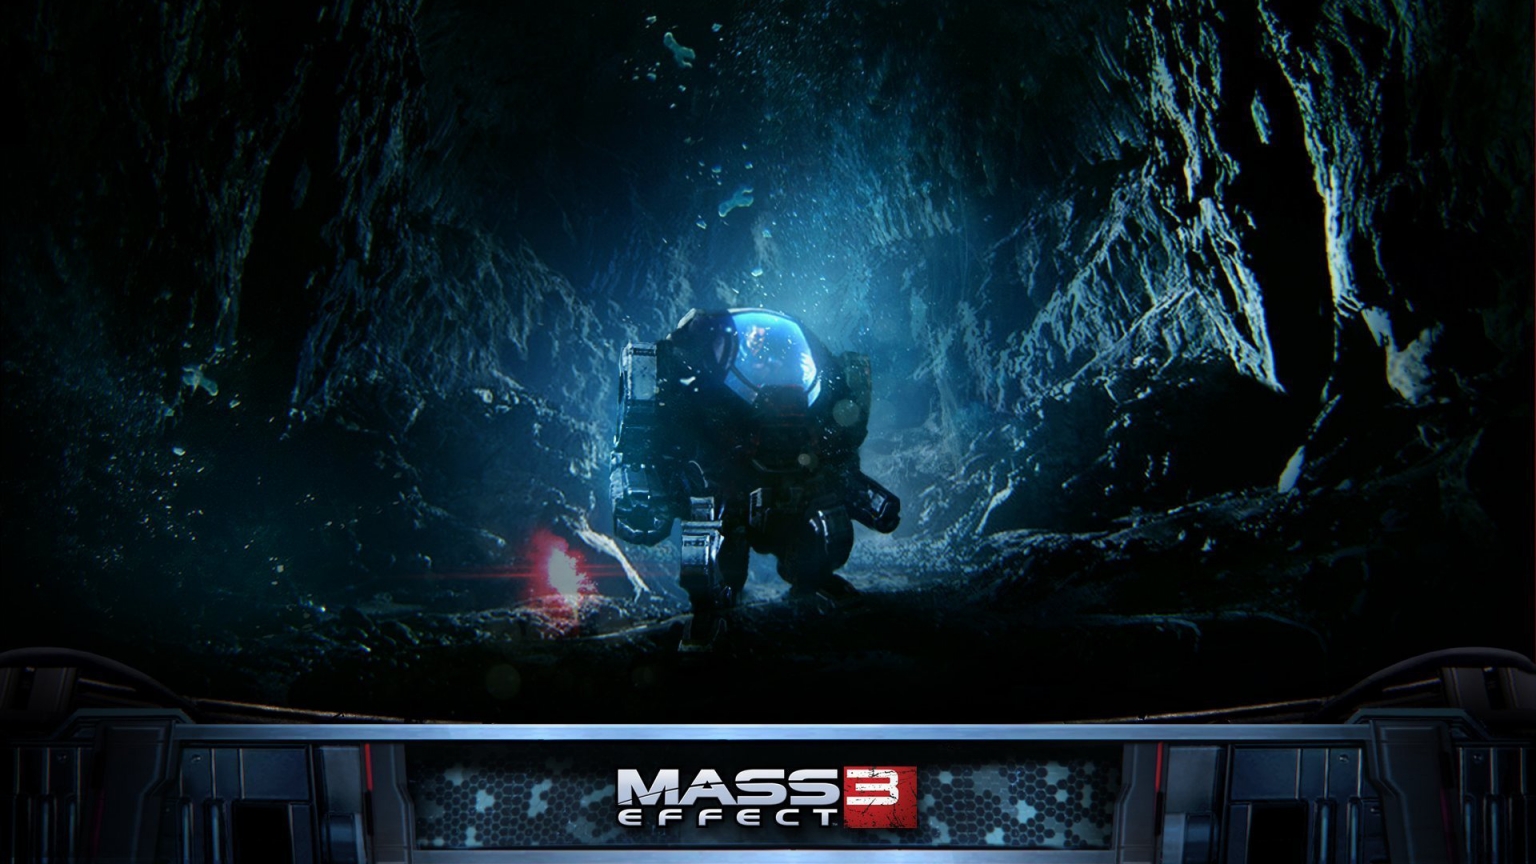 Mass Effect 3 Robot for 1536 x 864 HDTV resolution